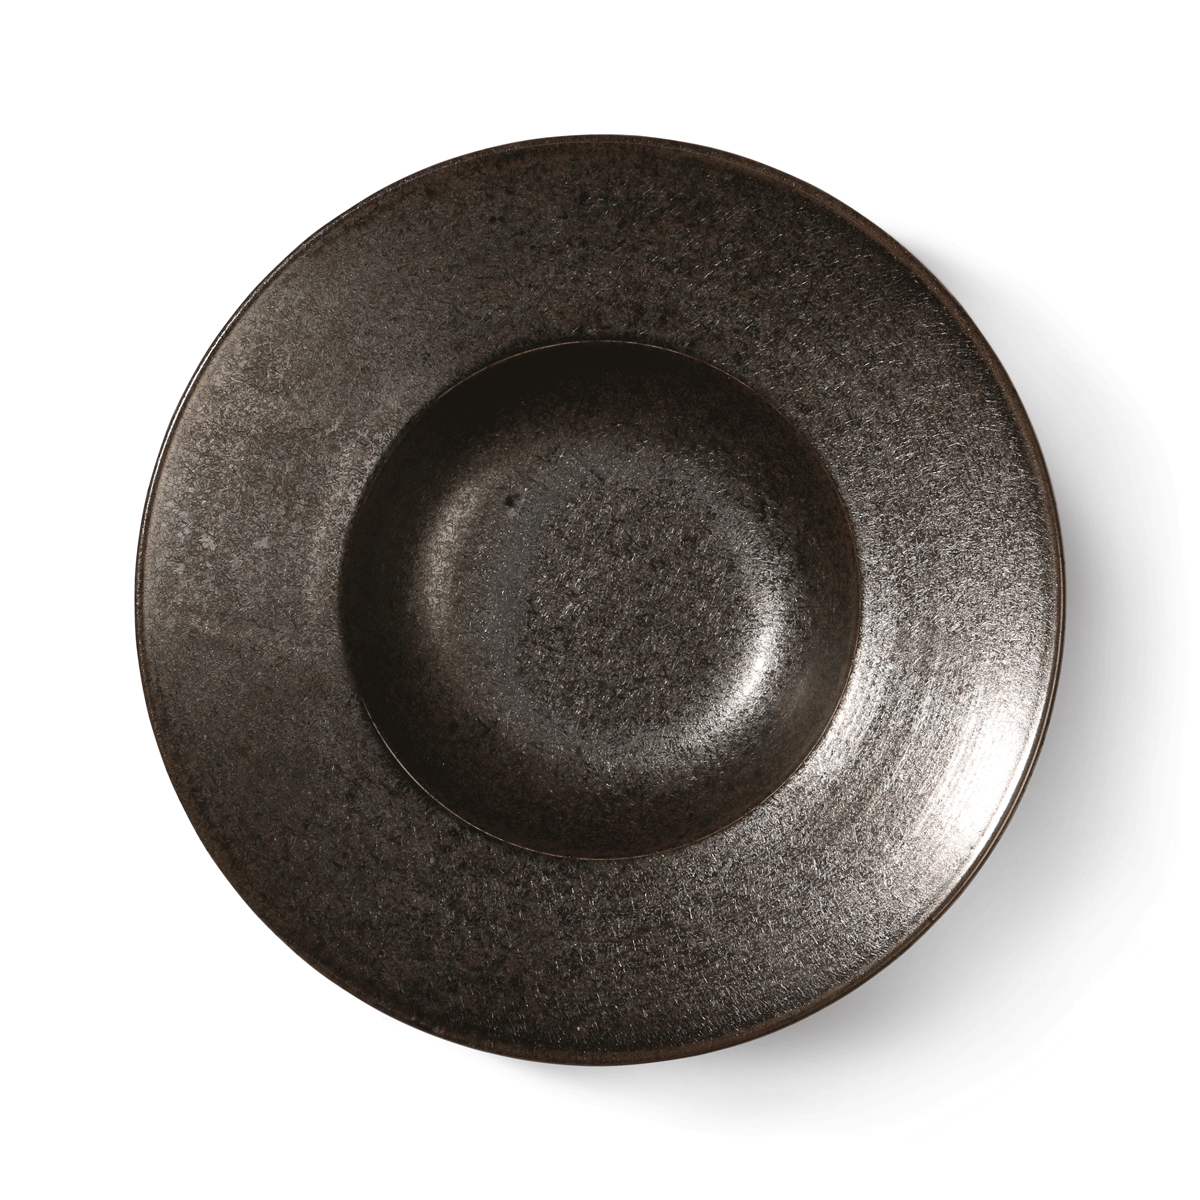 Home Chef Ceramics: Pasta Plate Rustic Black